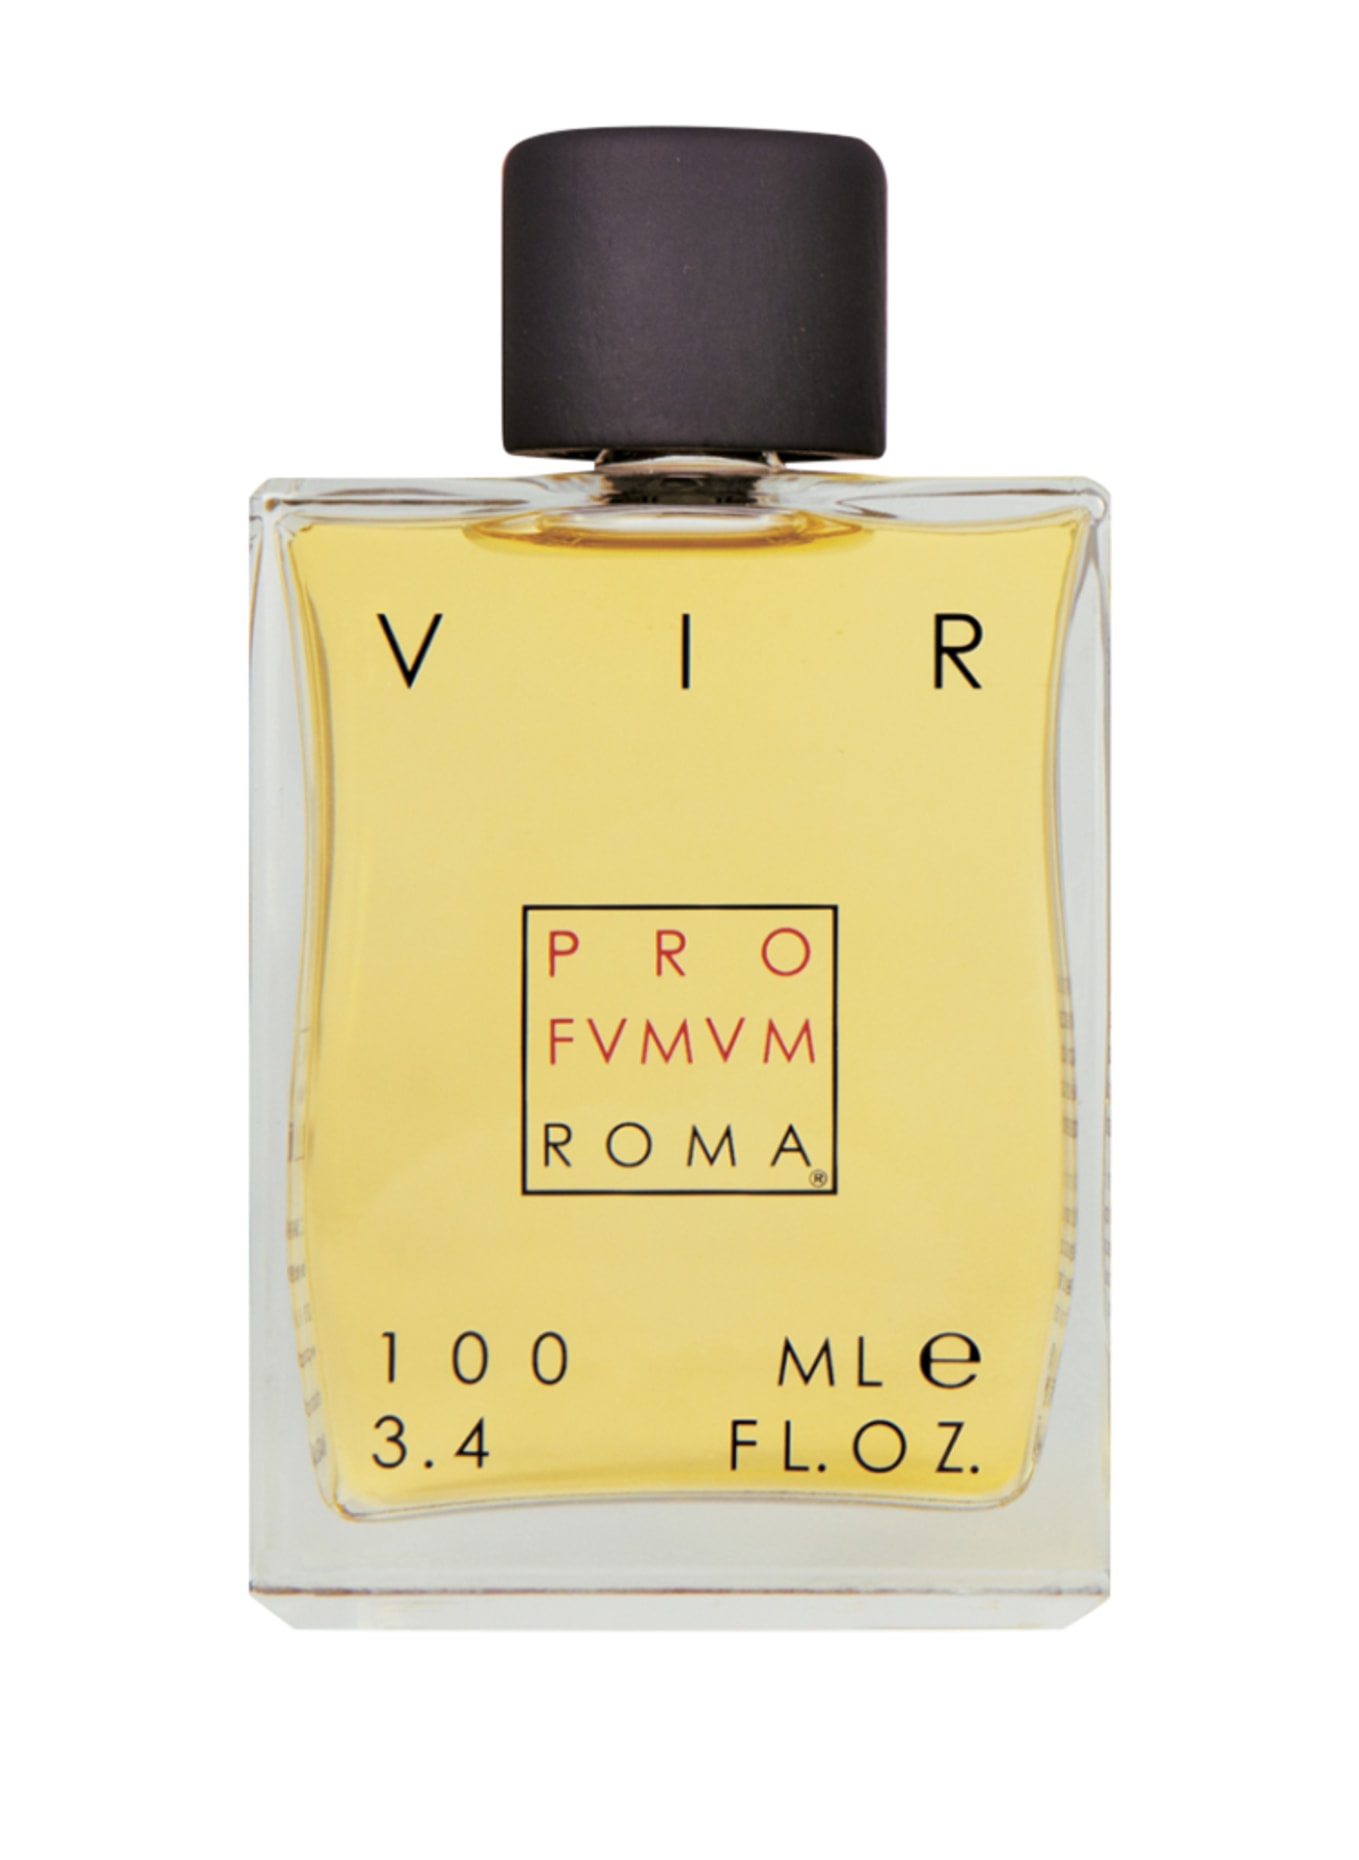 PRO FVMVM ROMA VIR (Obrázek 1)